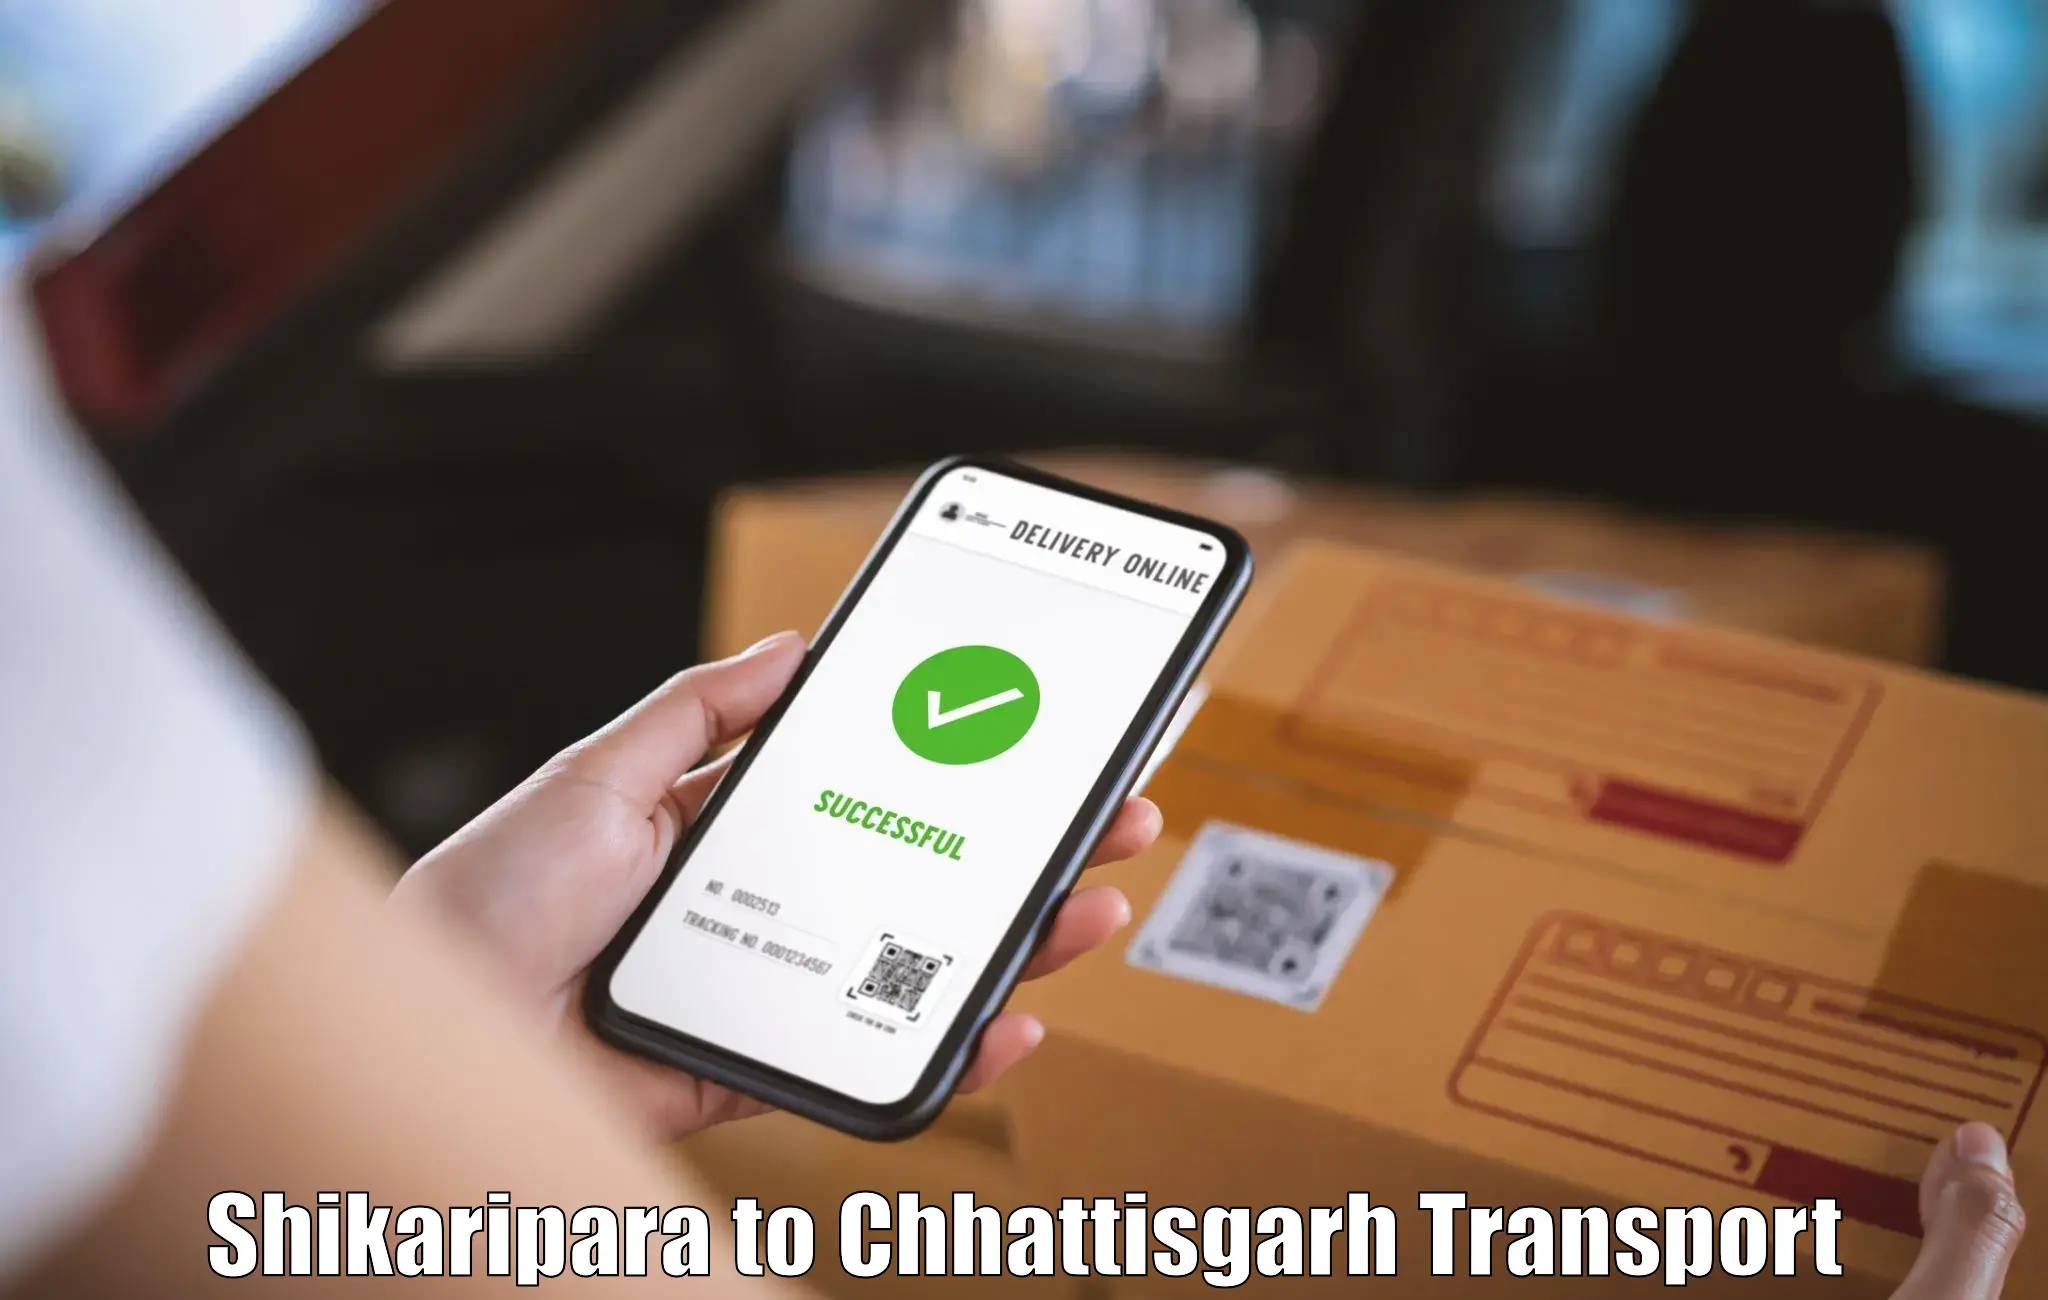 India truck logistics services Shikaripara to Patna Chhattisgarh